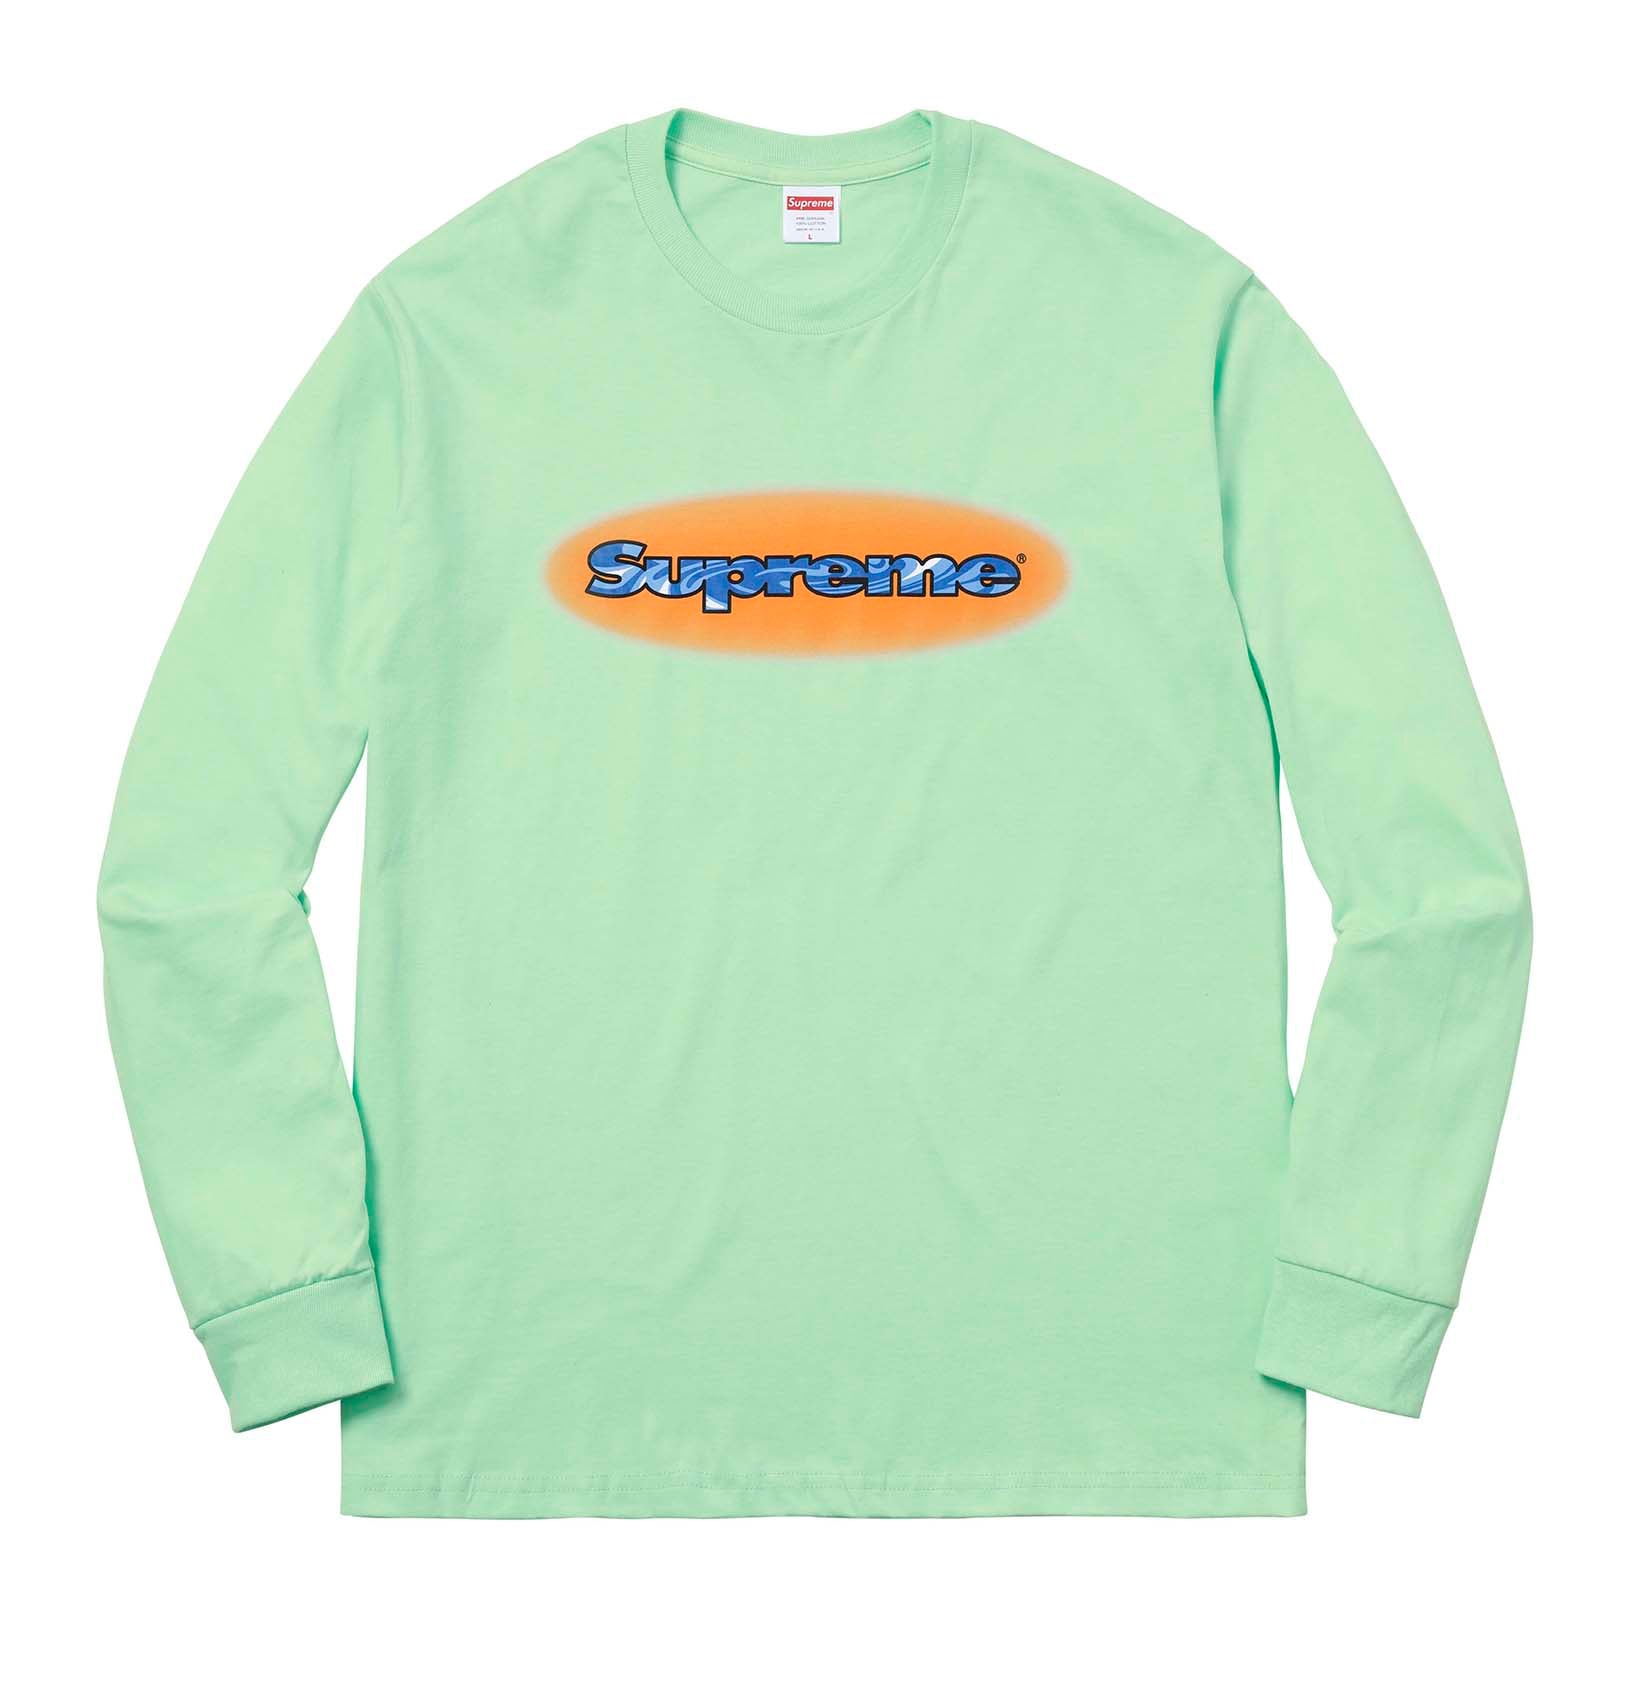 Supreme 2018年春夏コレクション Tシャツ 今は亡きProdigyに捧げるトリビュートTシャツに加えて、ポール・セザンヌの作品『トランプをする人々』をフィーチャーしたものも 来る2月17日（土）、遂に〈Supreme（シュプリーム）〉の2018年春夏コレクションの火蓋が切られる。今季登場するTシャツも、非常に濃密なラインアップに。噂によると、“Chicken Dinner Tee”と呼ばれているチキン料理をフィーチャーしたシュールなもの、そして今は亡きMobb Deep（モブ・ディープ）のProdigy（プロディジー）に捧げるトリビュートTシャツは、#WEEK1に登場するとのこと。また、首裏に「fuck the world.」のメッセージを添え、胸元に小ぶりなブランドロゴを配置したシンプルなアイテムや、クラゲプリント、さらにはフランズ人画家Paul Cézanne（ポール・セザンヌ）の『トランプをする人々』をグラフィックとして採用したアートTシャツなども優先してカートインしたいところだ。  上のフォトギャラリーから各種Tシャツのデザインをチェックしたあとは、以下のルックブックとカテゴリー別のアイテム一覧にも目を通し、早めに購入の優先順位を決めておくのが得策だろう。